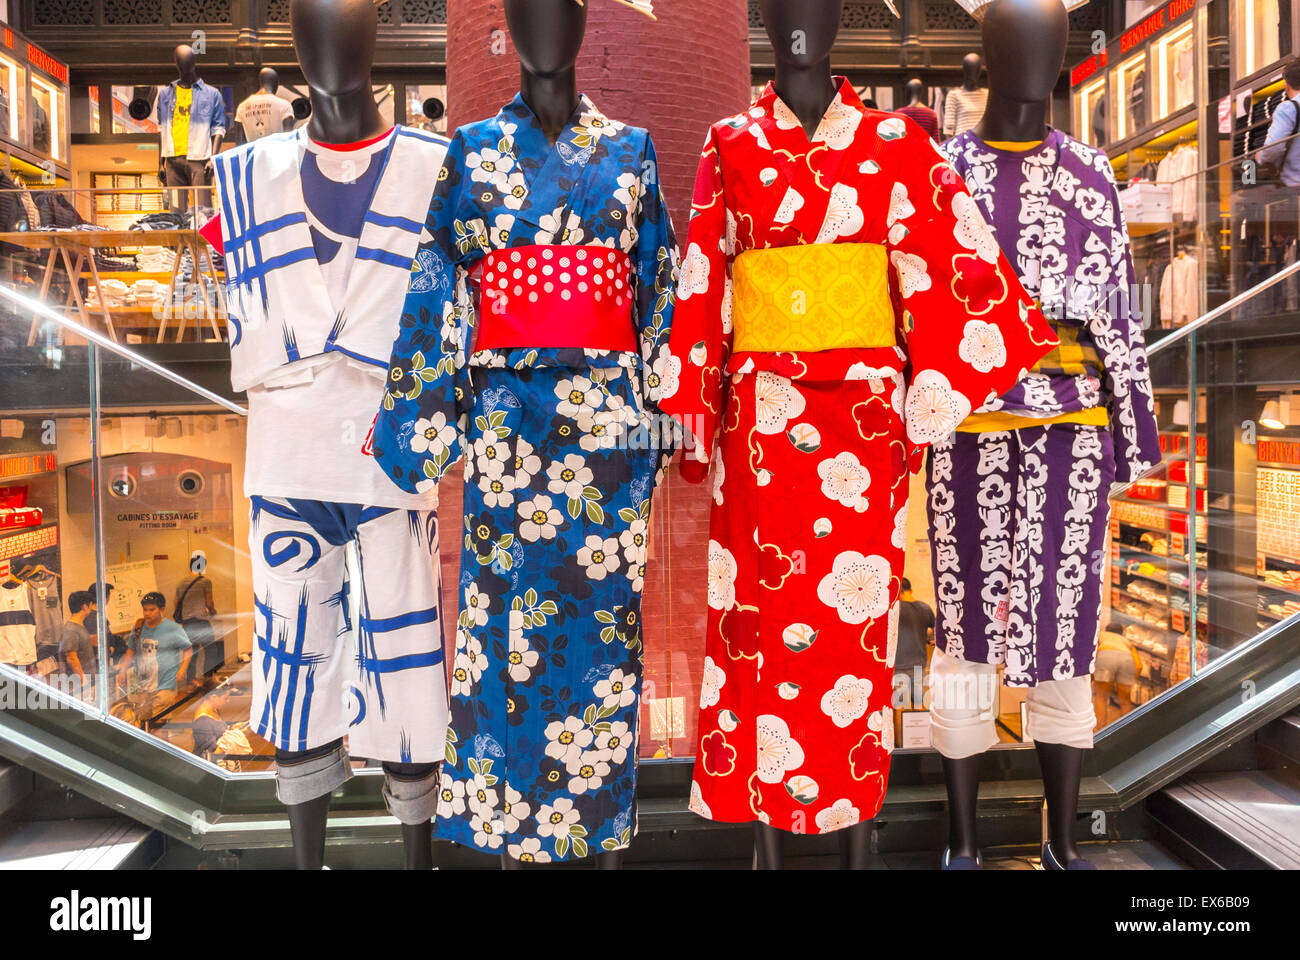 Paris, France, présentation en magasin dans le quartier du Marais. 'Intérieur', magasin de vêtements Uniqlo Afficher culture Kimono traditionnelles Photo Stock - Alamy